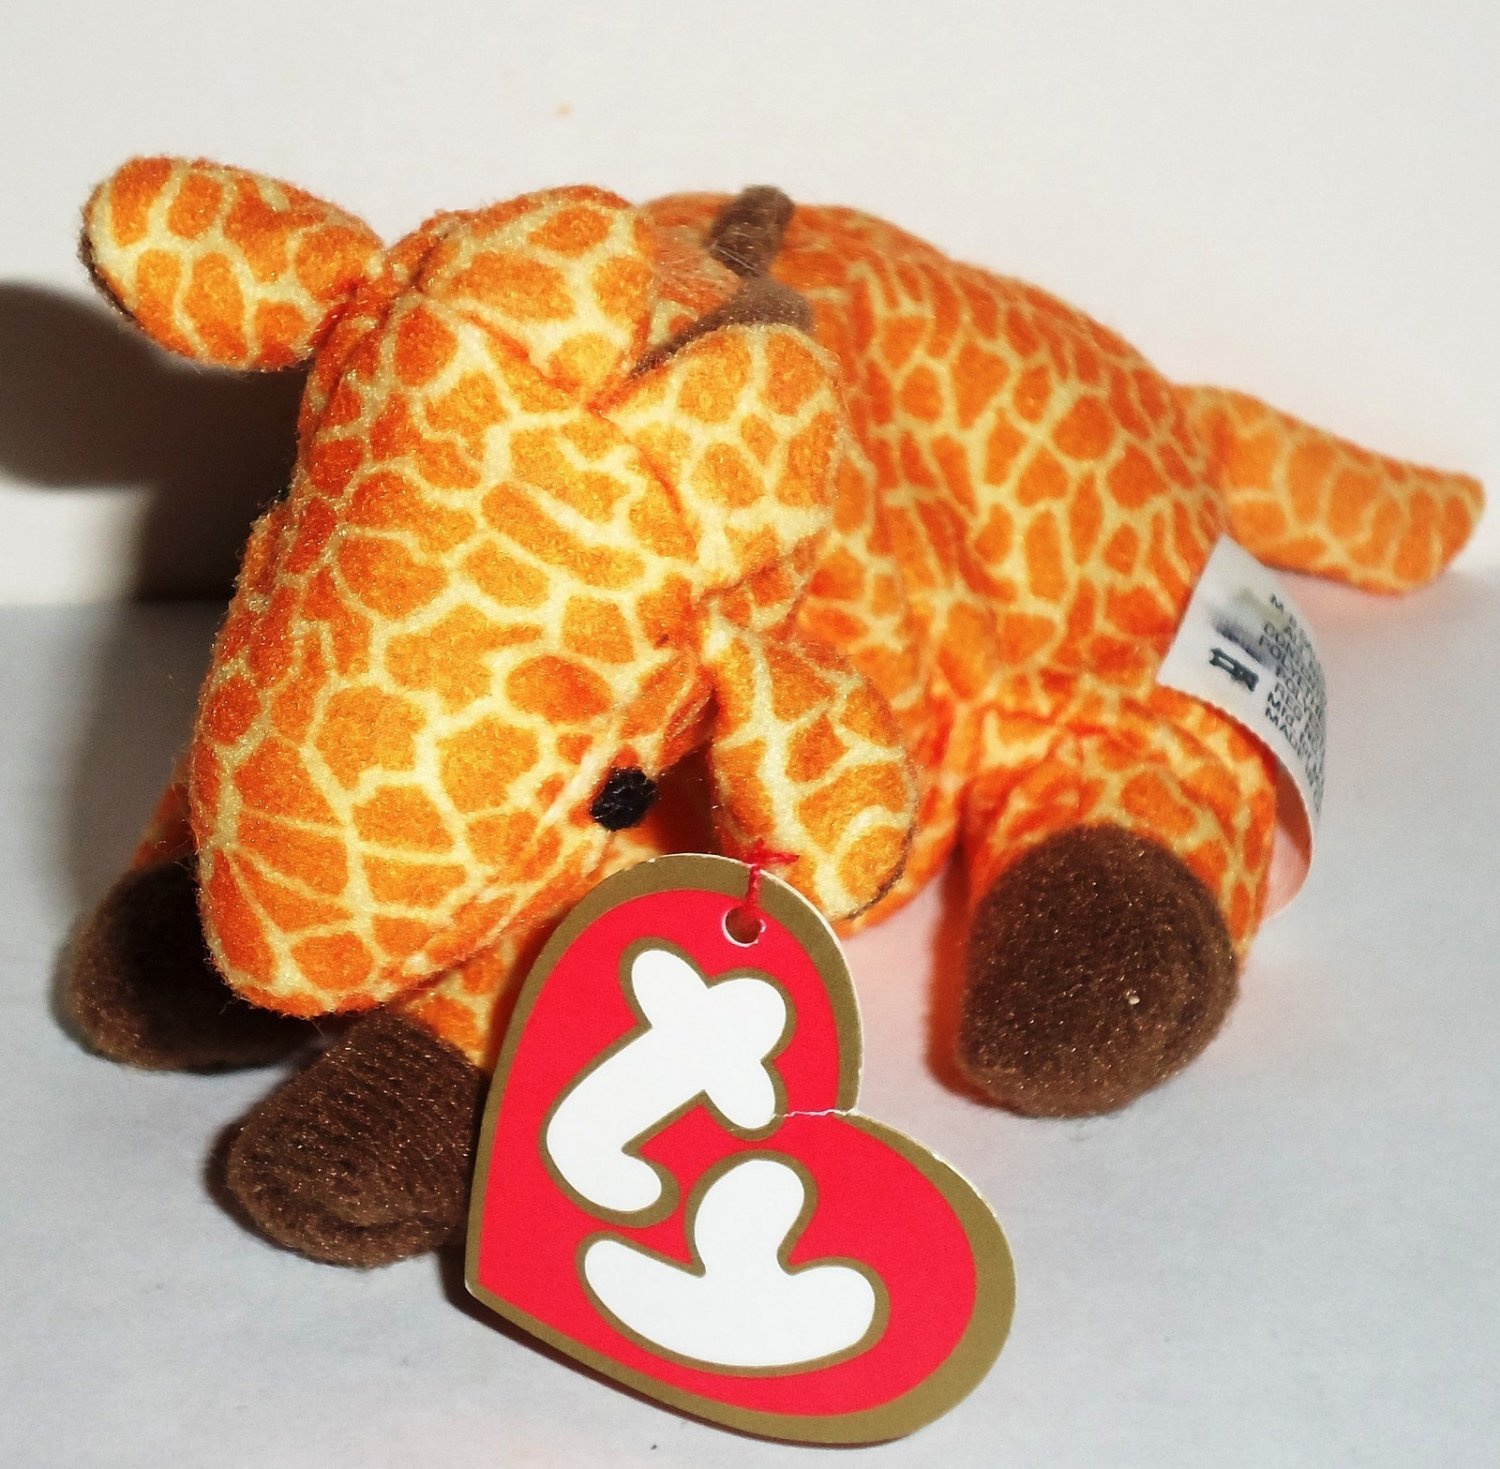 1998 TY Teenie Beanie Baby #3 Twigs Giraffe McDonalds Happy Meal Toy New 